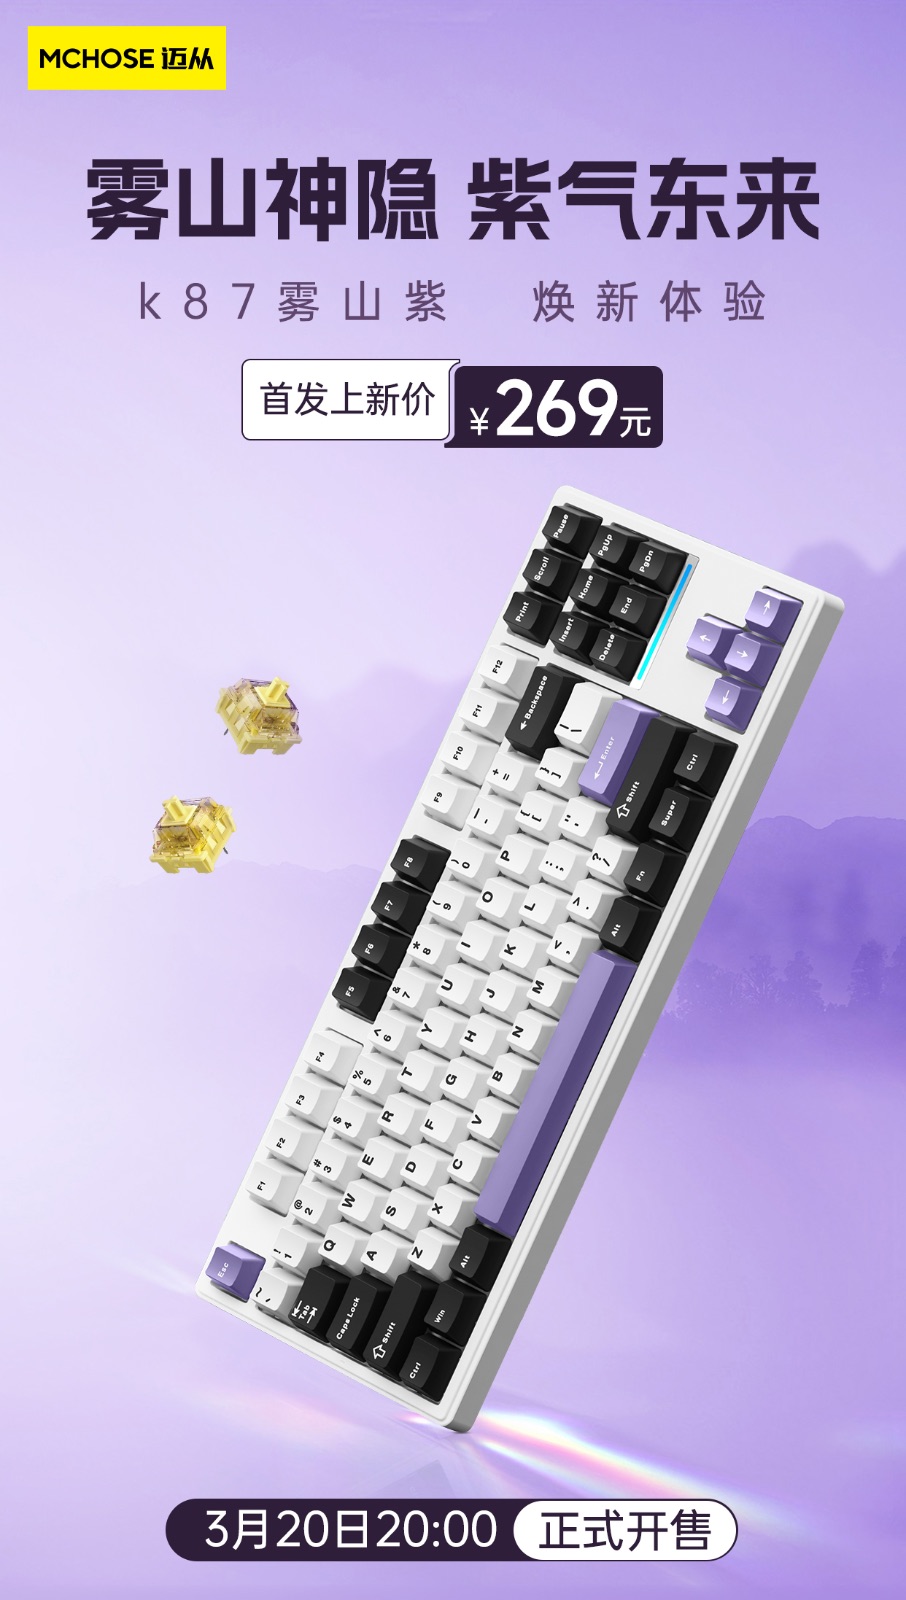 K87键盘海报_01.jpg